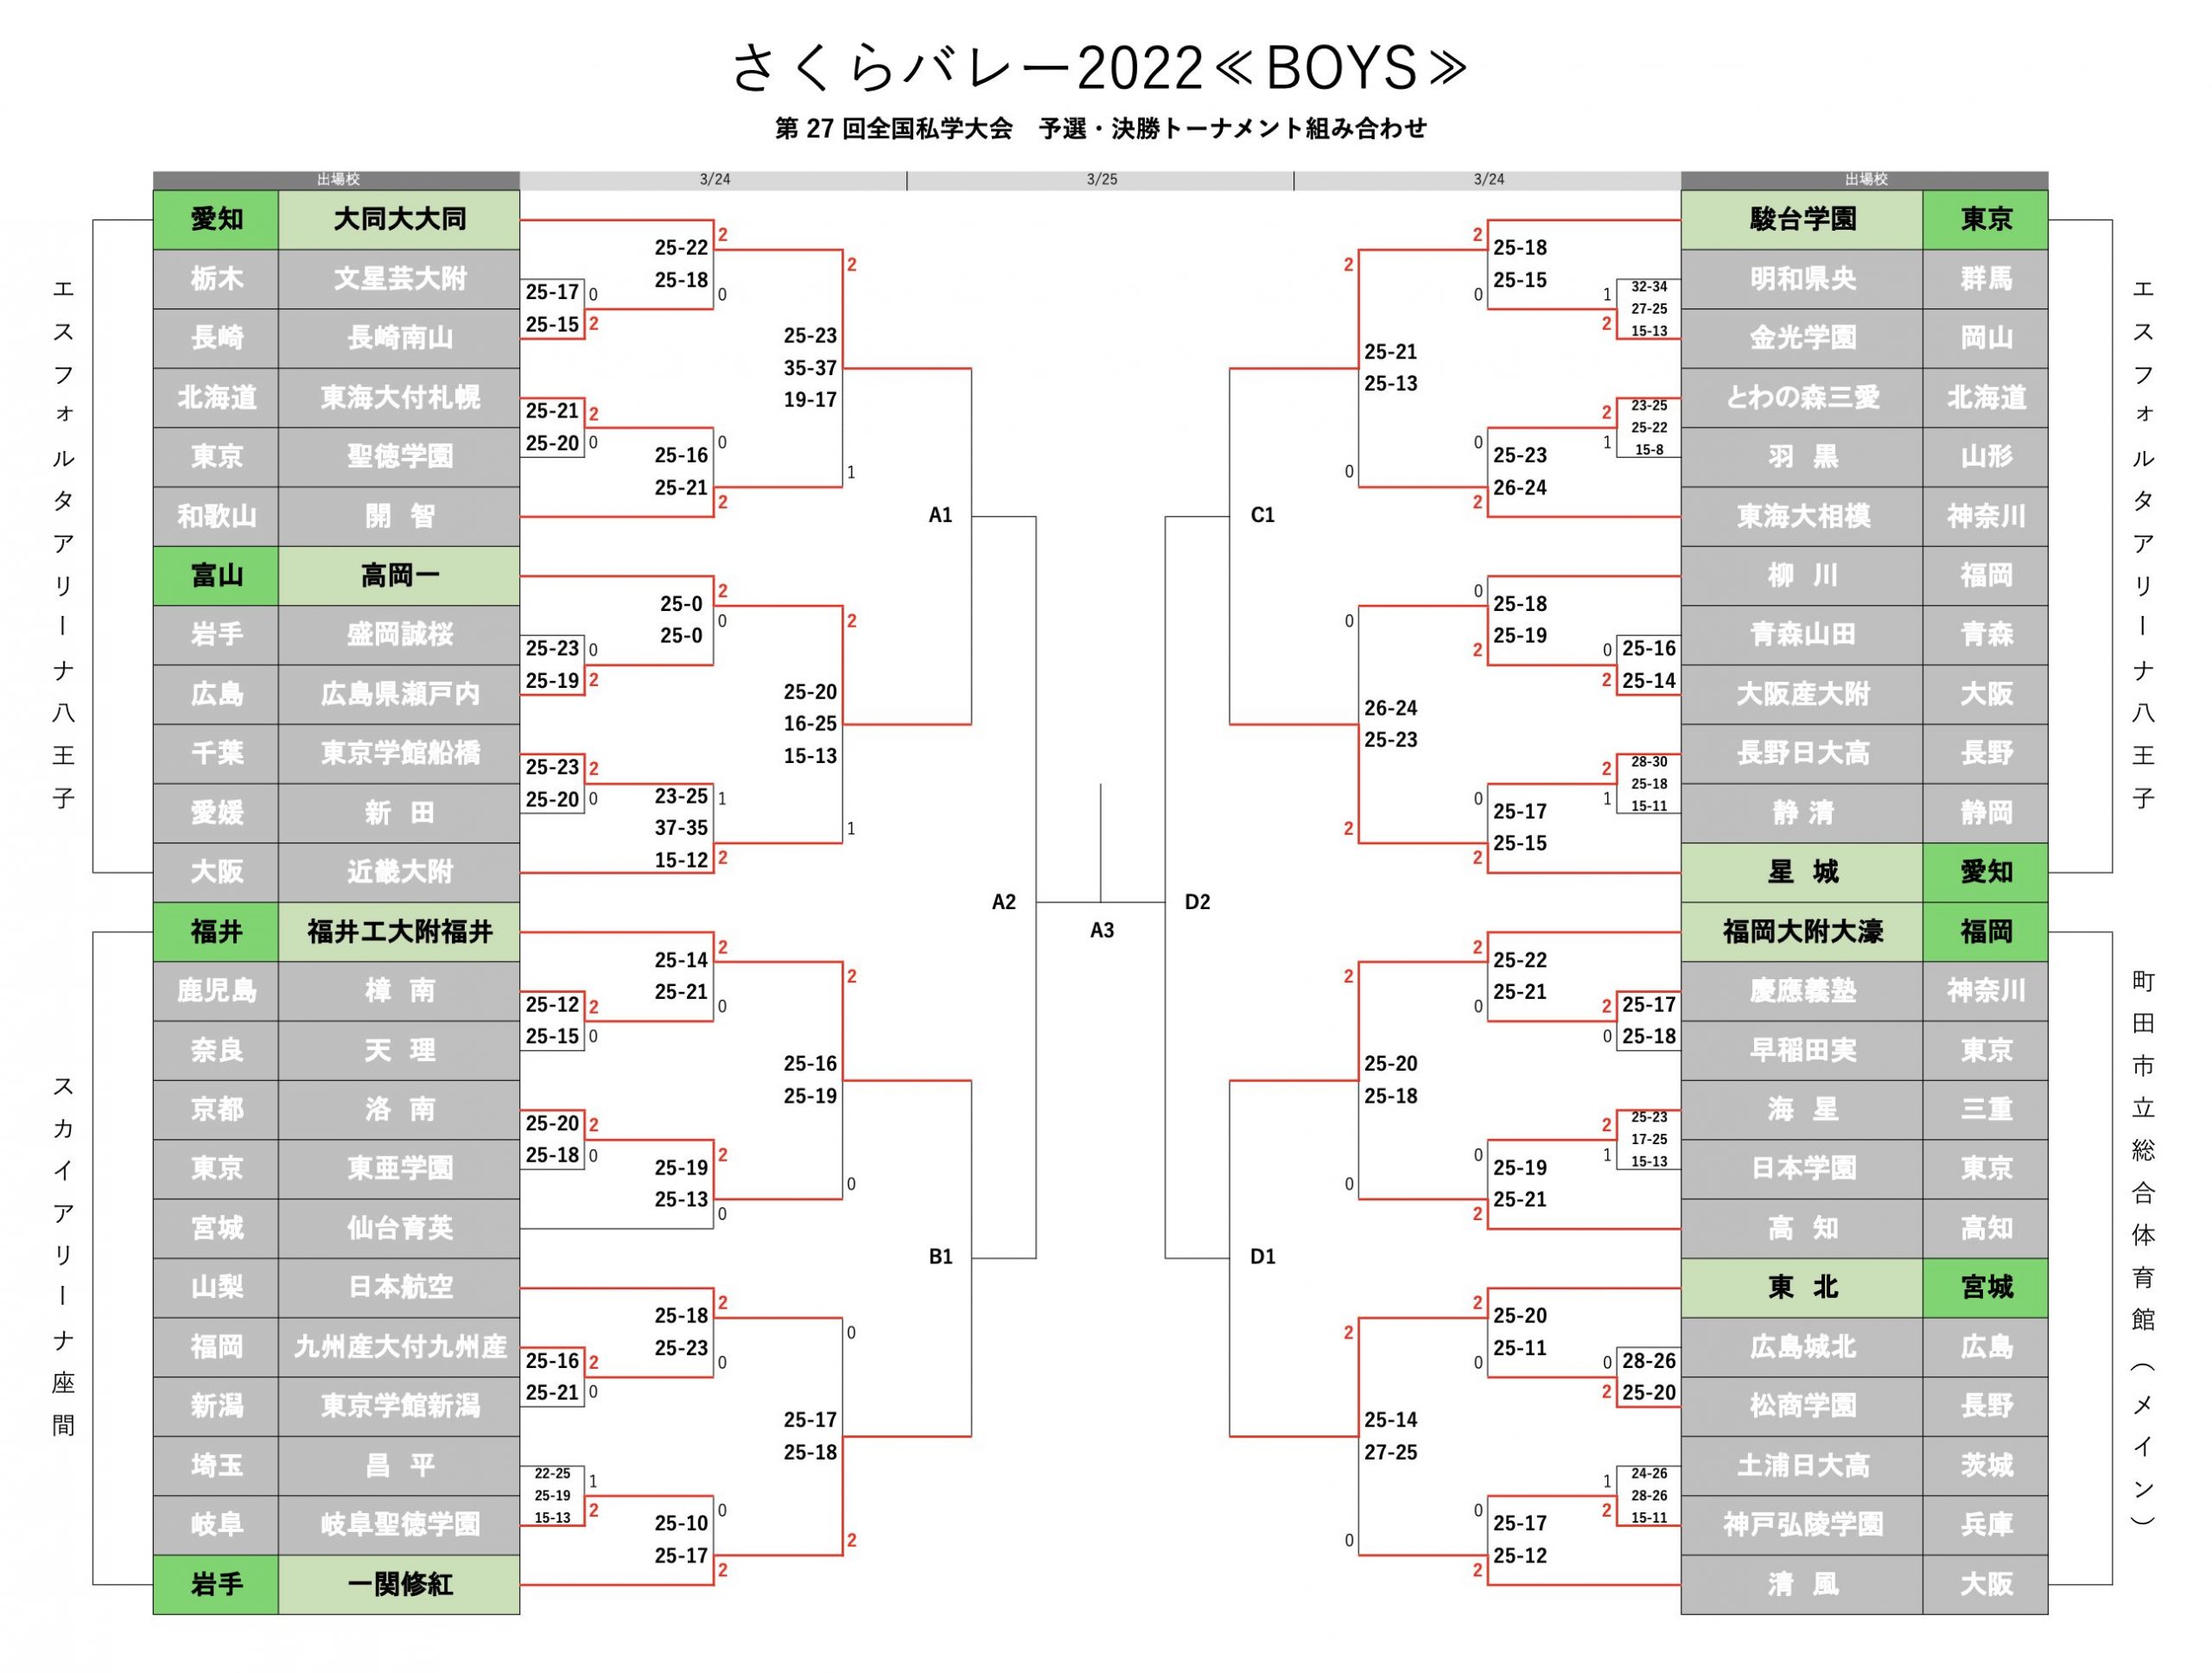 【さくらバレー】ベスト8が決定 男子予選トーナメント戦結果一覧 | バレーボール | スポーツブル (スポブル)